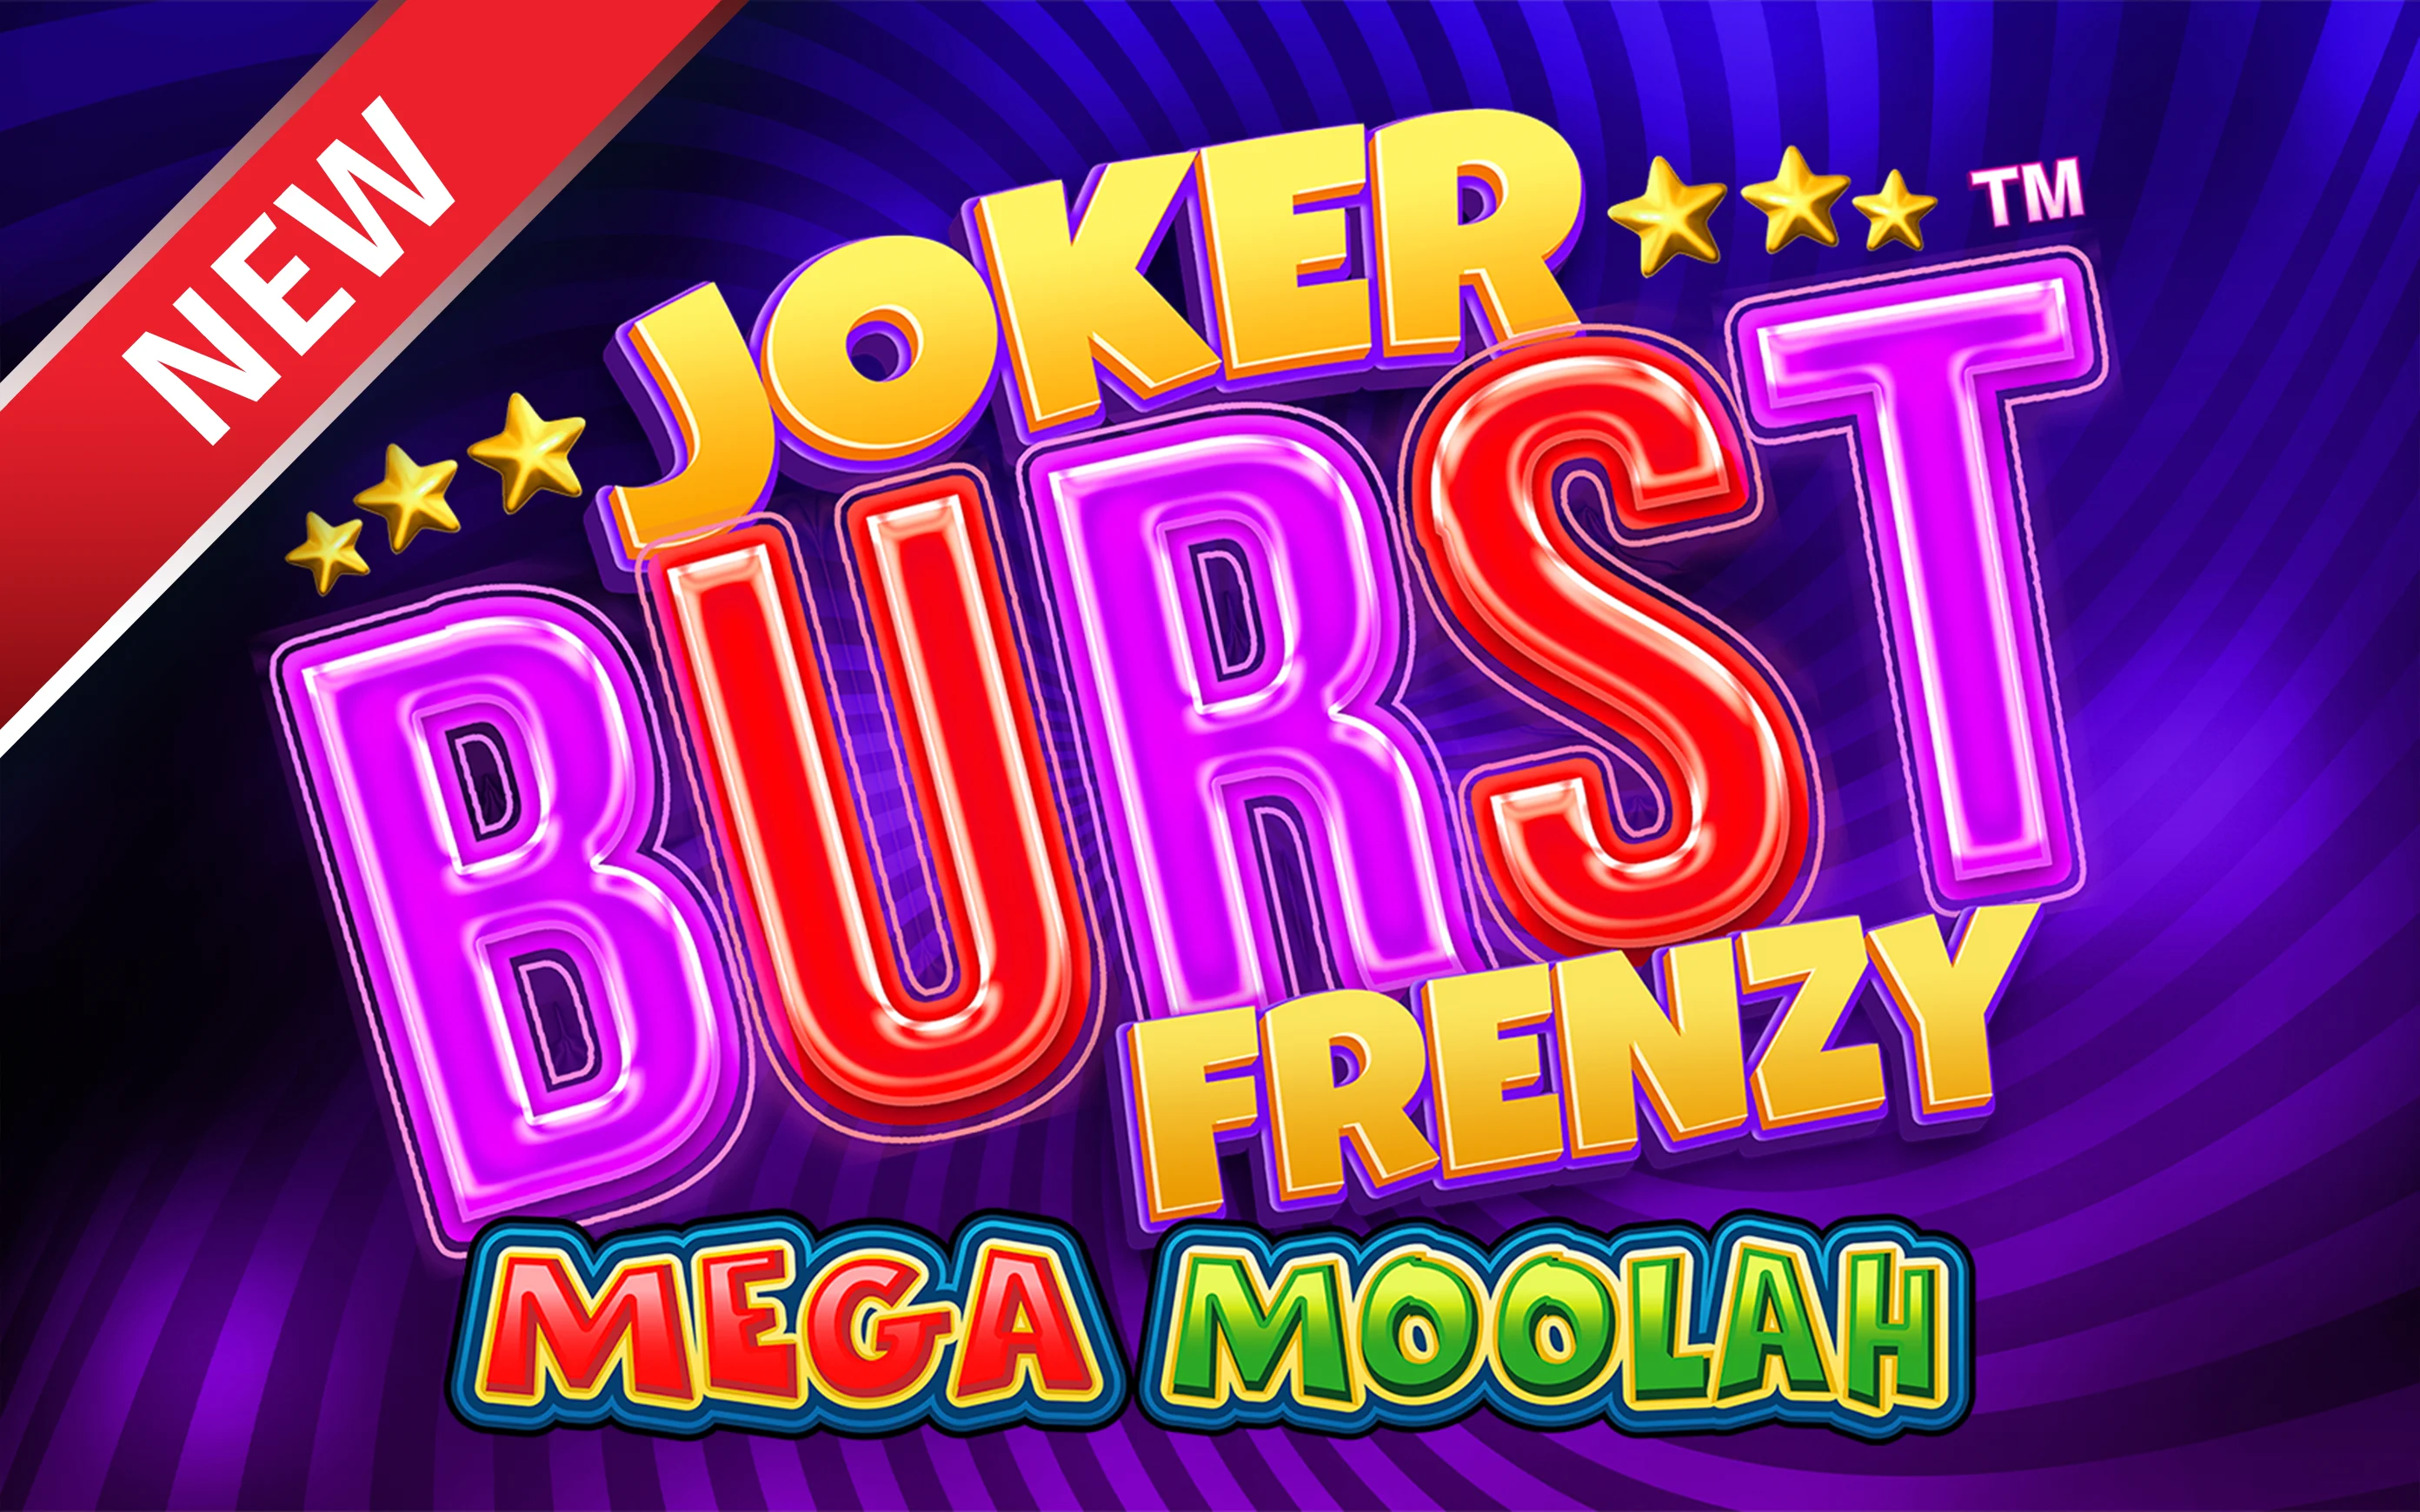 Spil Joker Burst Frenzy Mega Moolah på Starcasino.be online kasino
